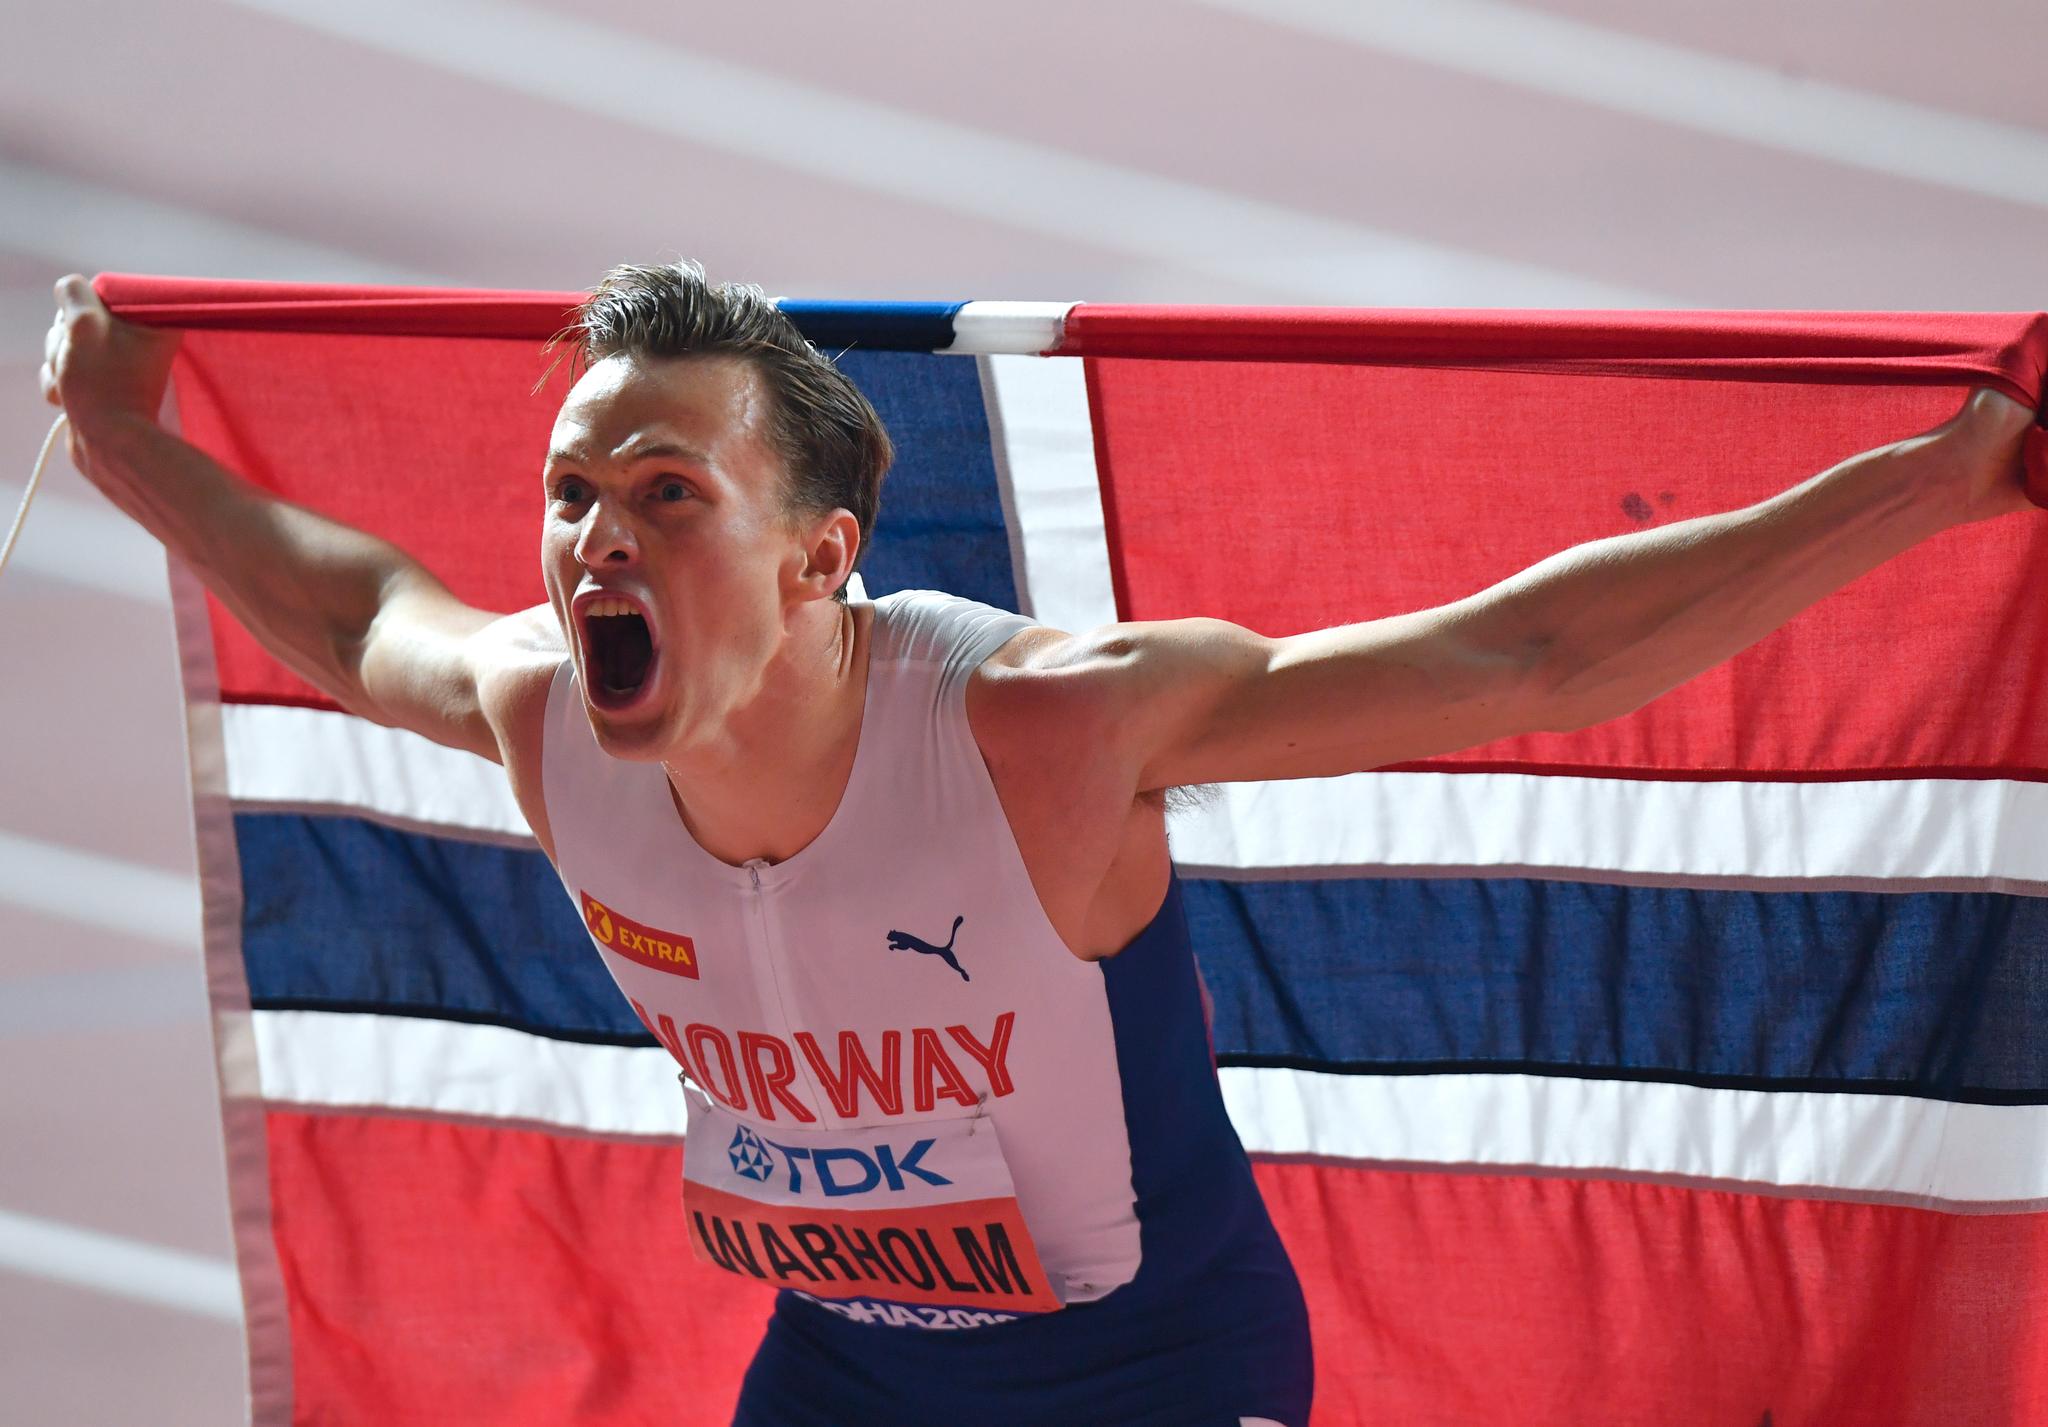 REGJERENDE MESTER: Karsten Warholm vant gull på 400 meter hekk i Qatar-VM i 2019.